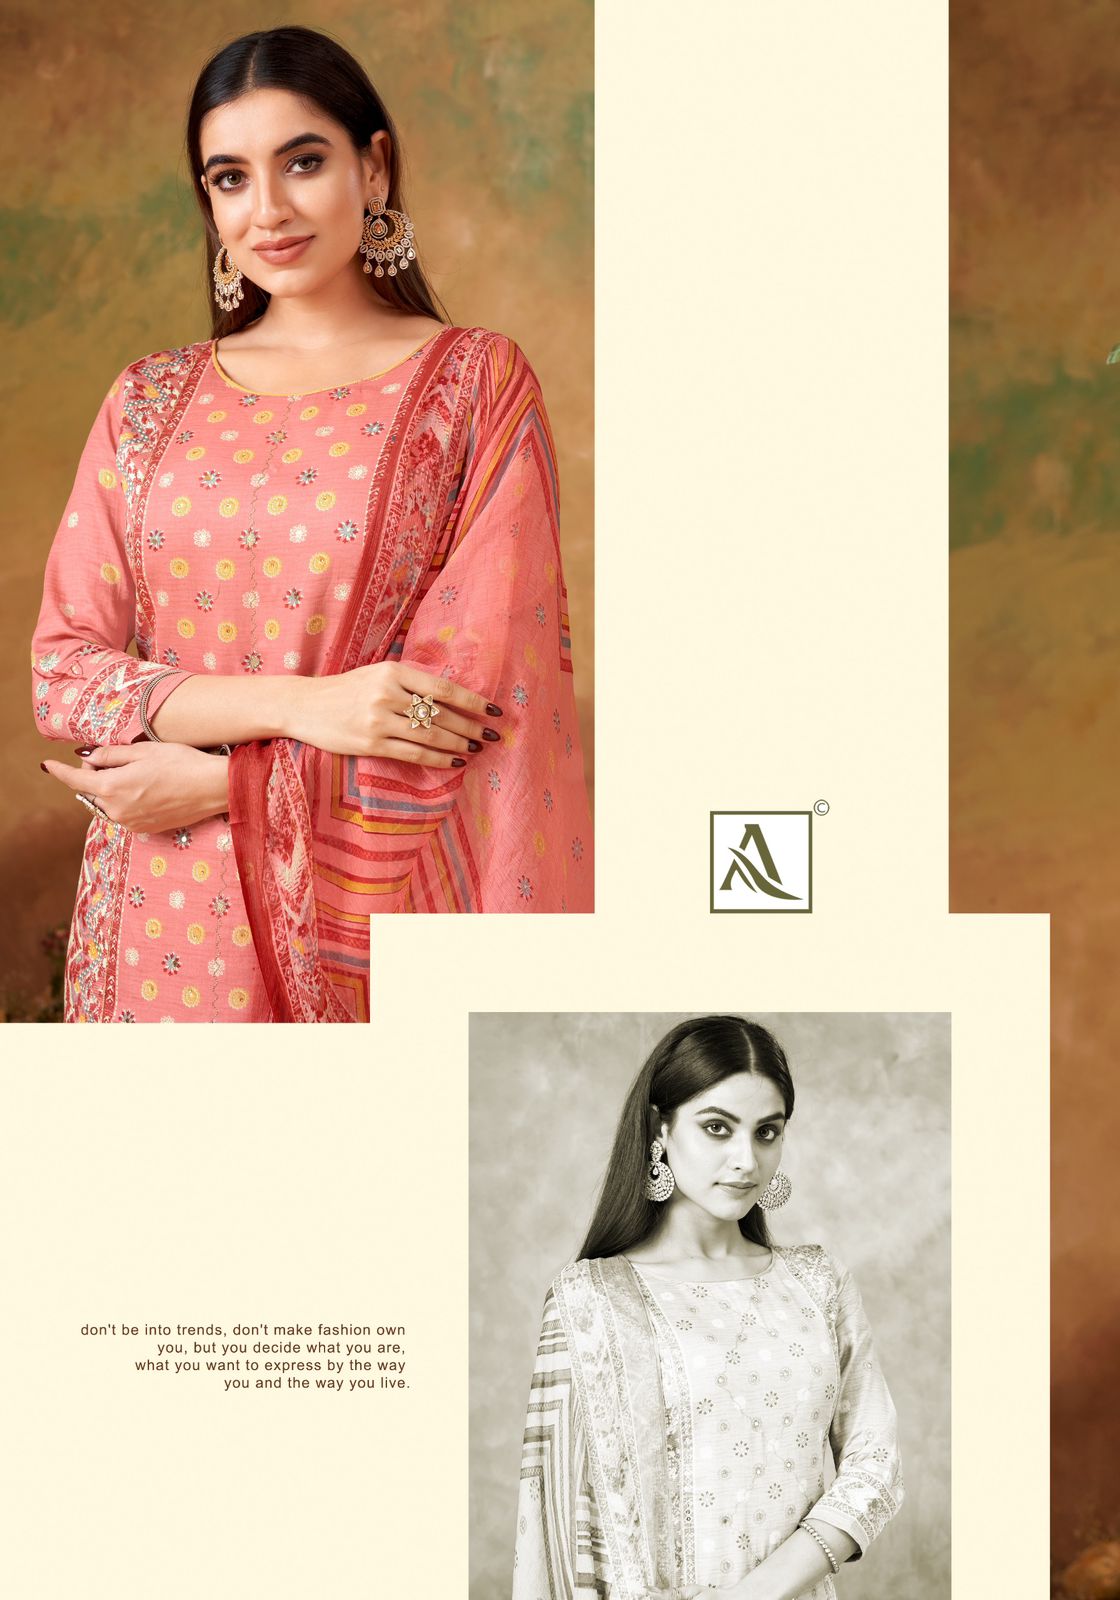 New Kusha Alok Pure Zam Plazzo Style Suits Supplier Gujarat